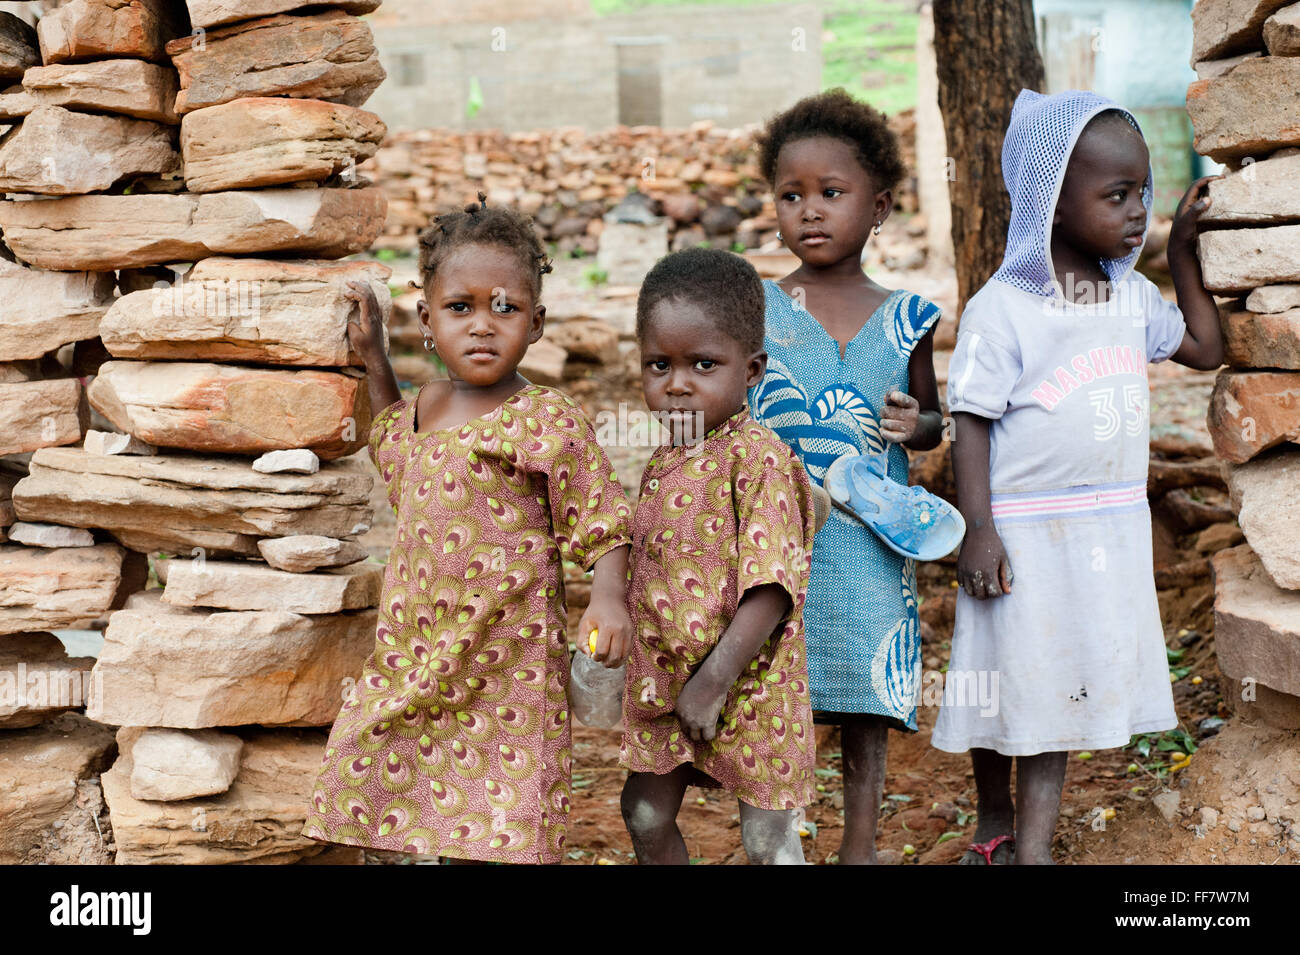 Mali, Afrique - Groupe d'enfants noirs en Afrique Banque D'Images